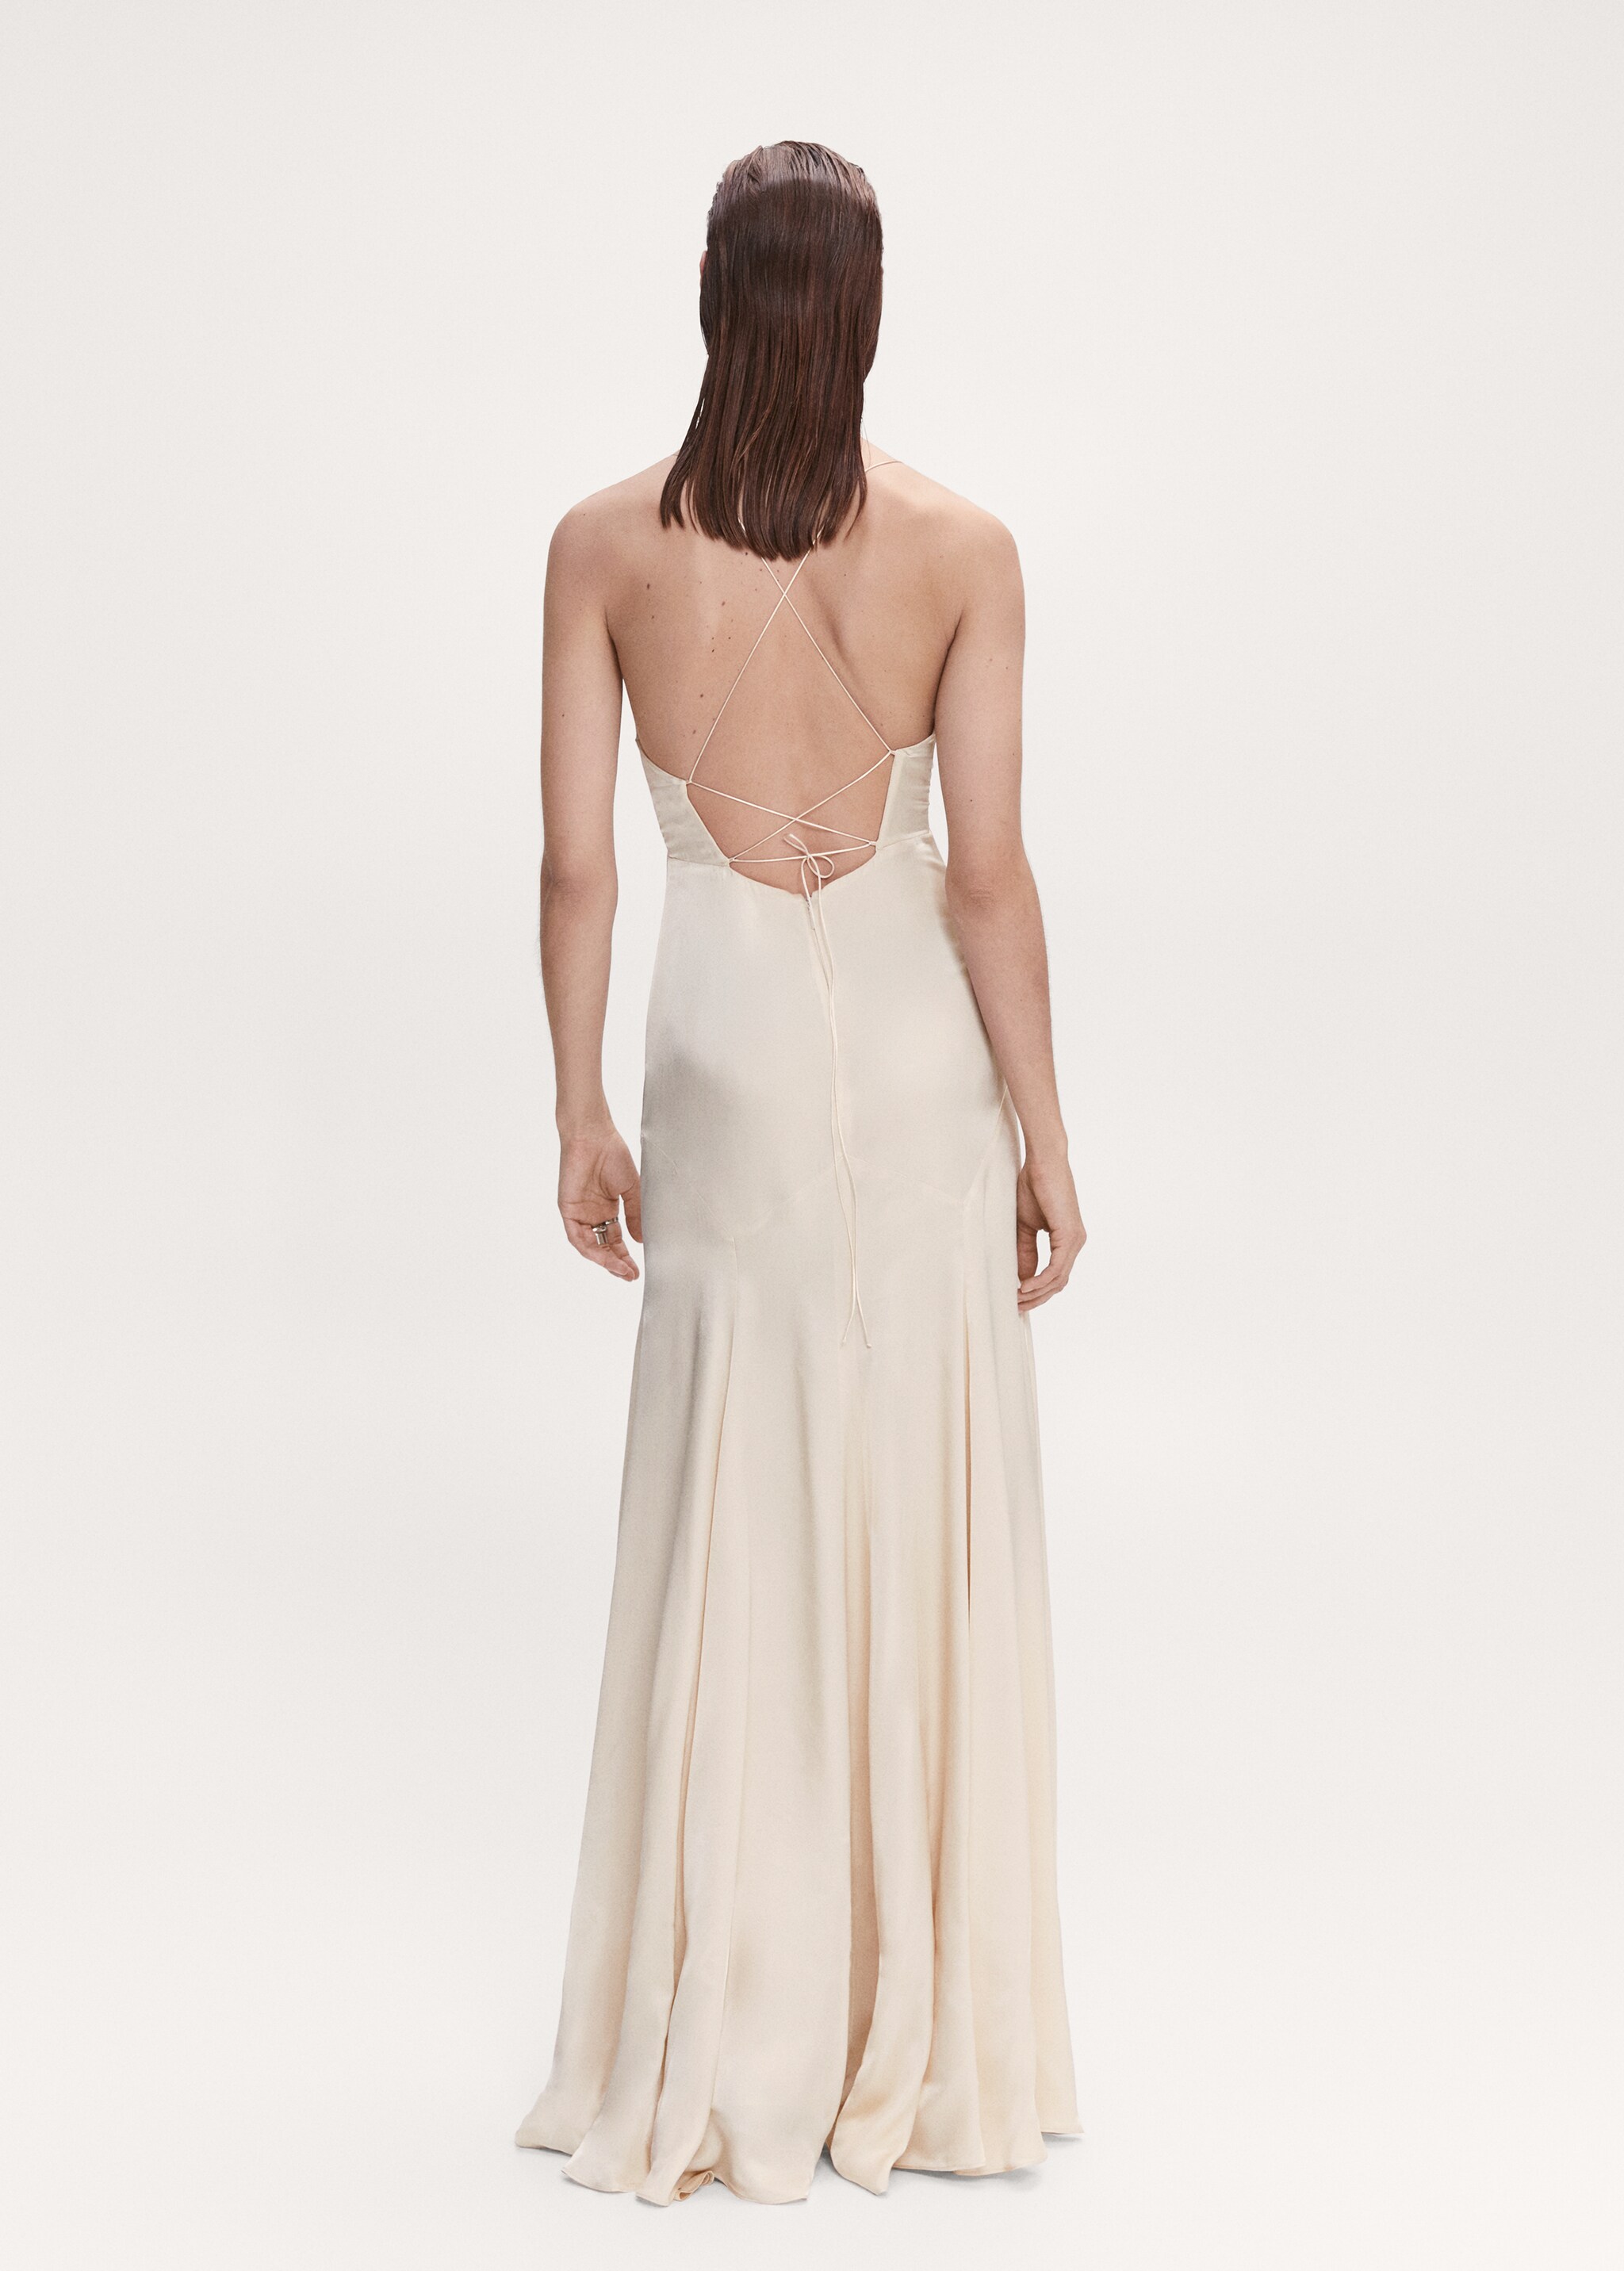 Satiniertes Kleid mit überkreuztem Rücken - Rückseite des Artikels